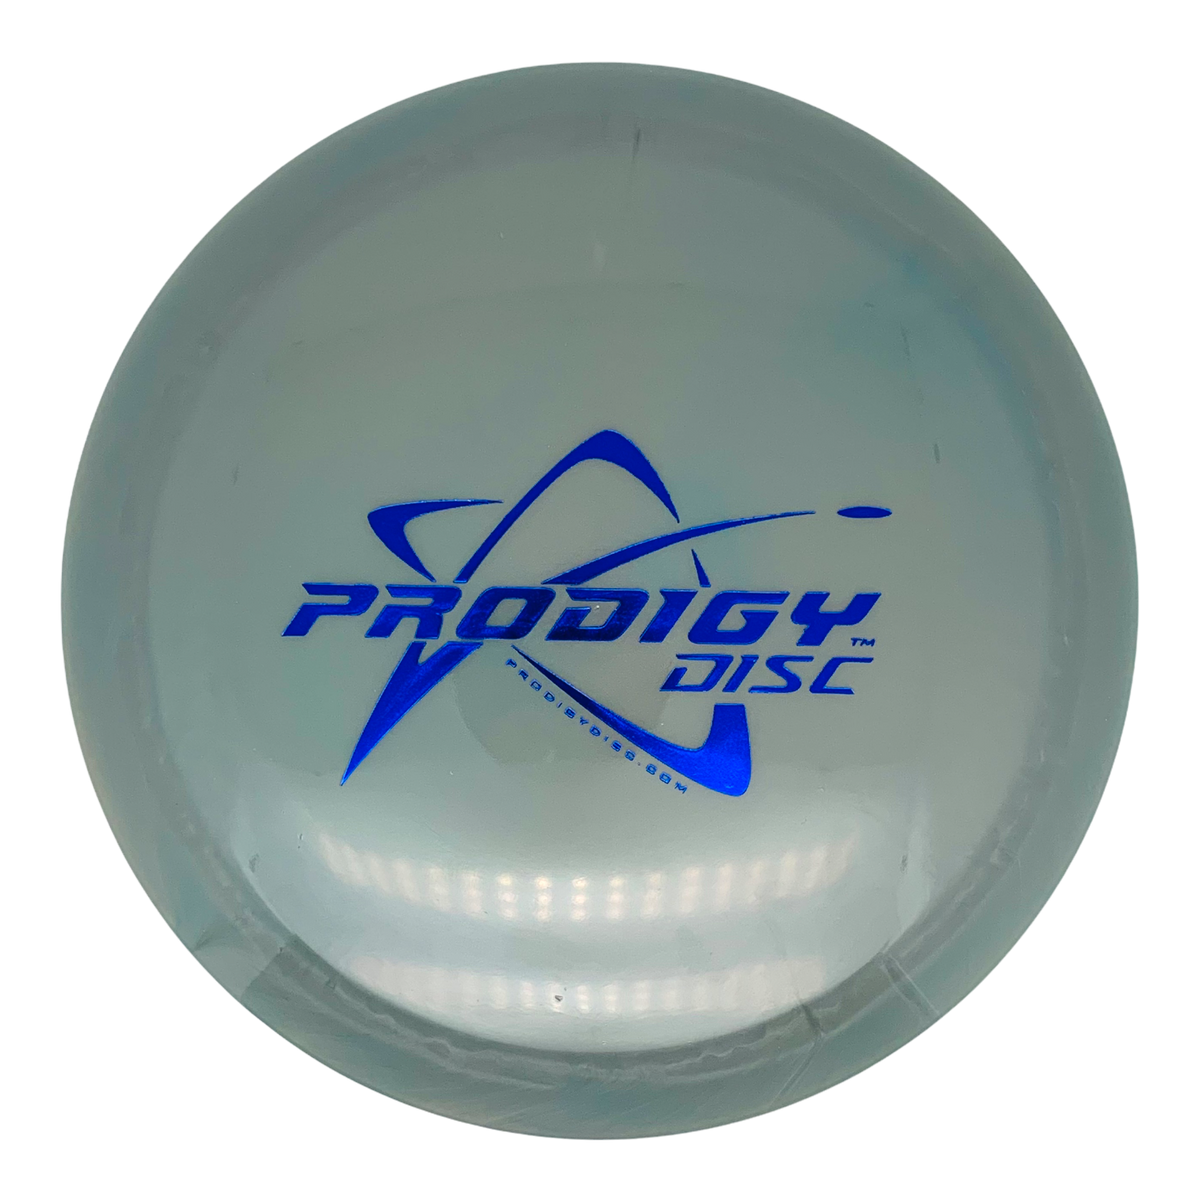 Prodigy 750 H4 V2 - Prodigy Disc Stamp